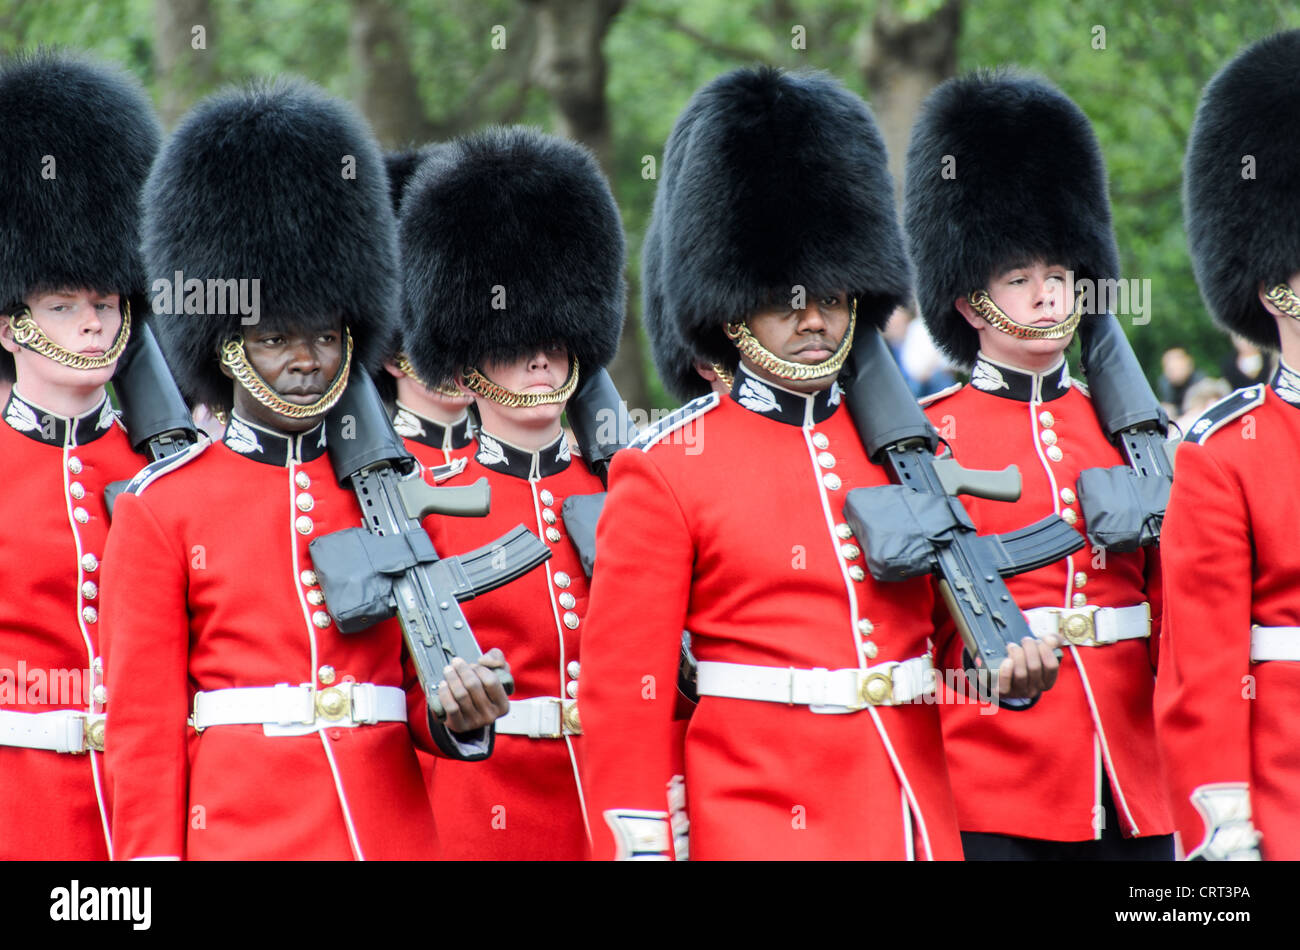 LONDRES, Royaume-Uni — Grenadier Guards participent à un défilé de cérémonie au palais de Buckingham. Ce régiment d'élite de l'armée britannique est connu pour son uniforme et sa précision emblématiques en foreuse, représentant le riche héritage militaire du Royaume-Uni. Banque D'Images